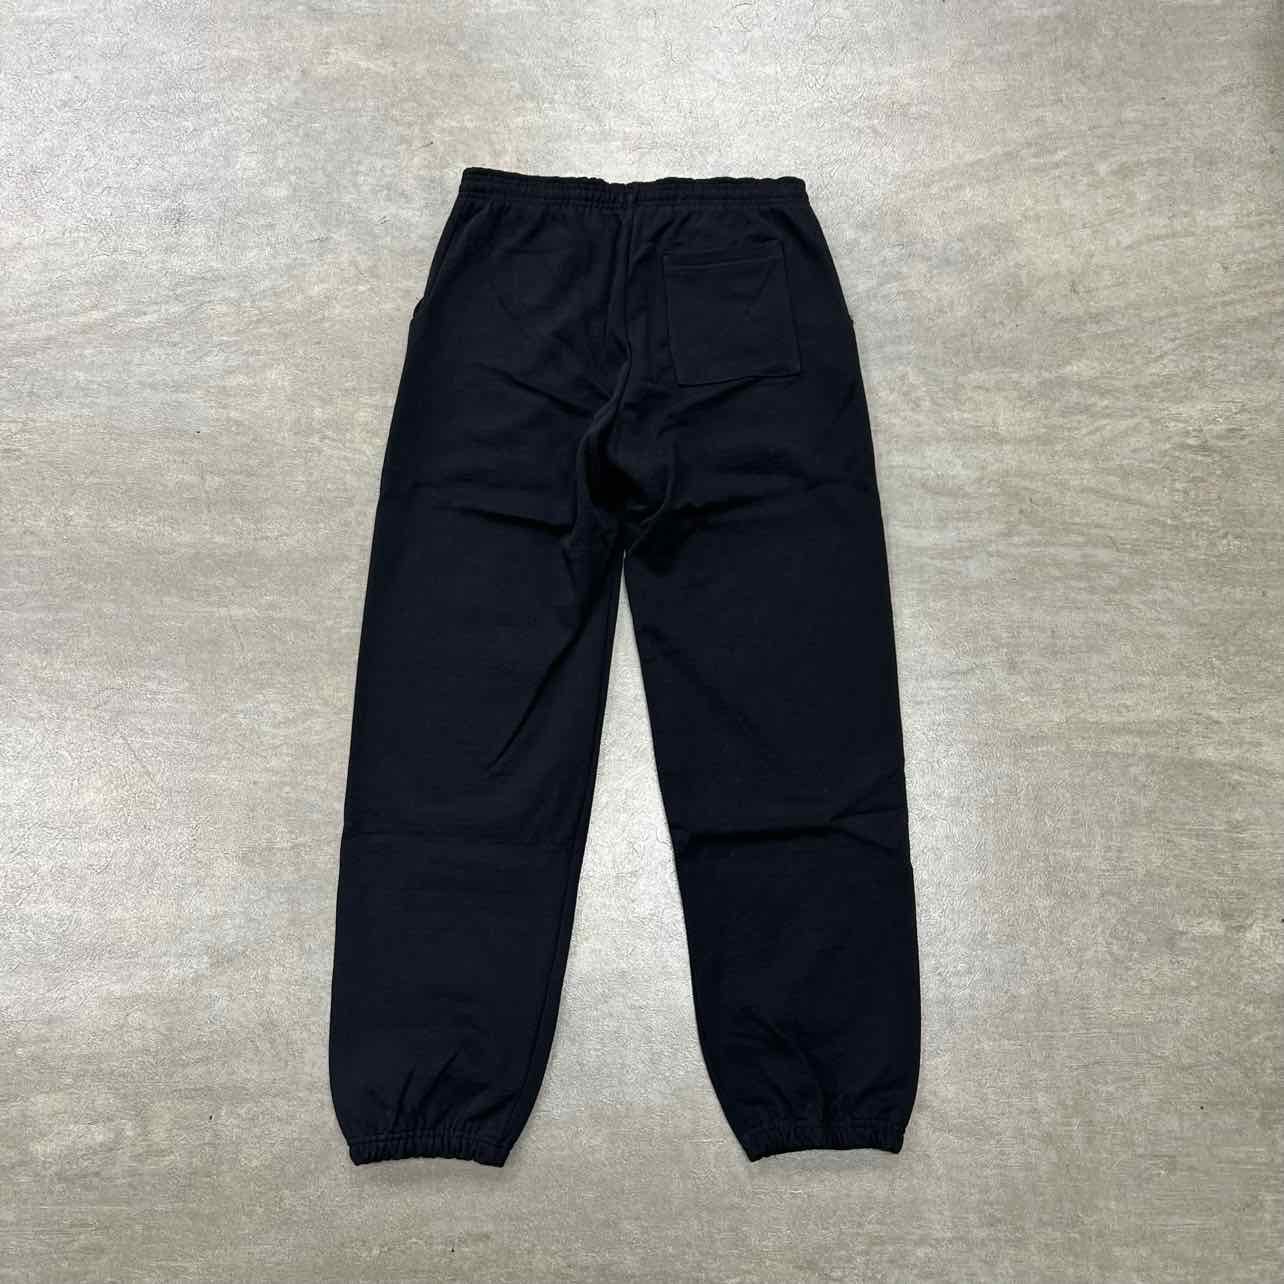 Sp5der Sweatpants "P*NK" Black New Size XL